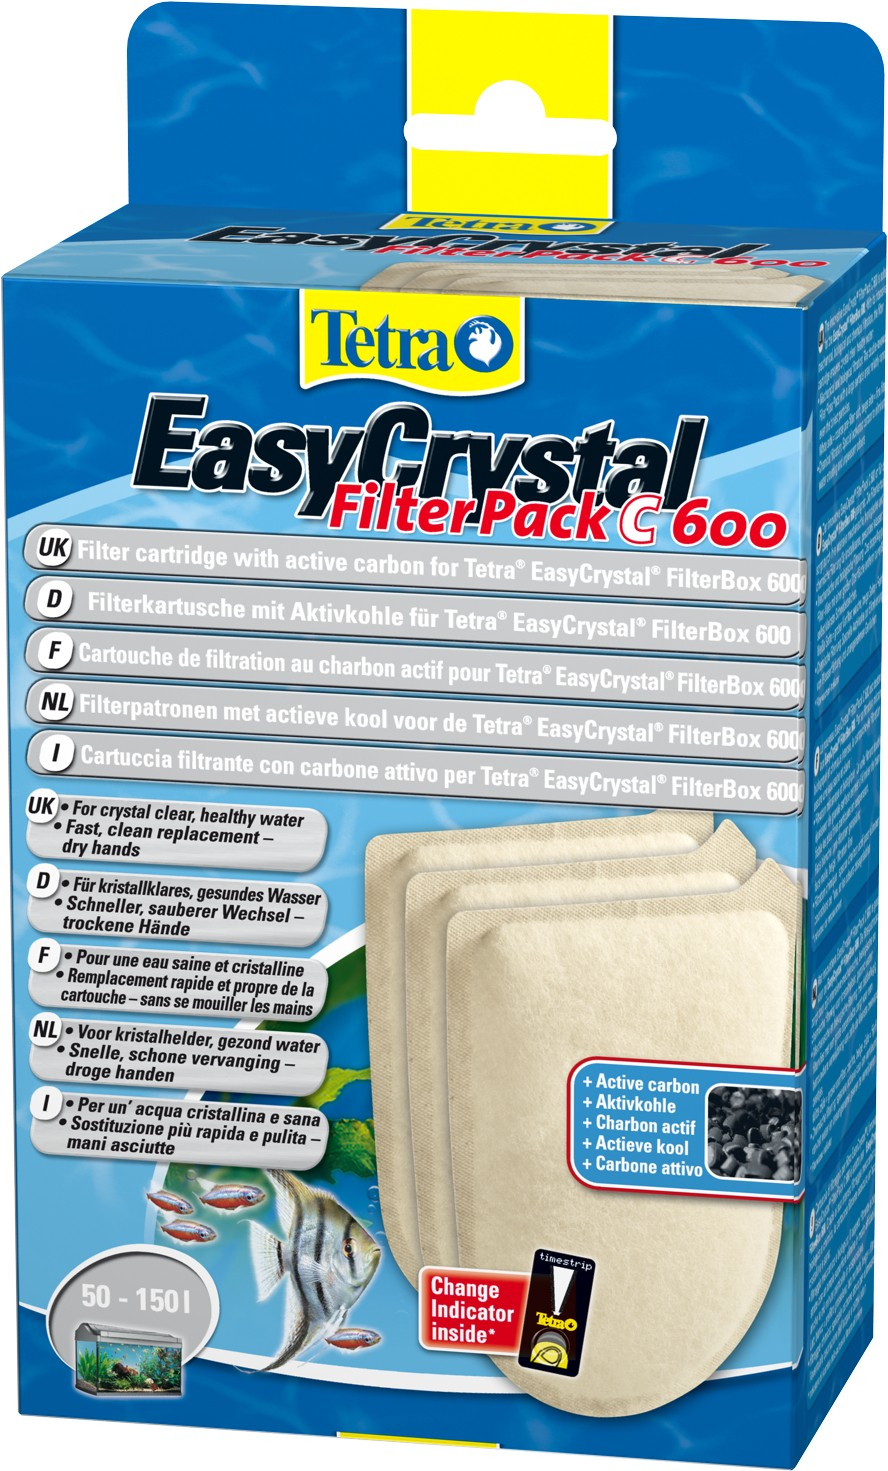 Cartouche de filtration au charbon actif Tetra EasyCrystal filterpack C 600